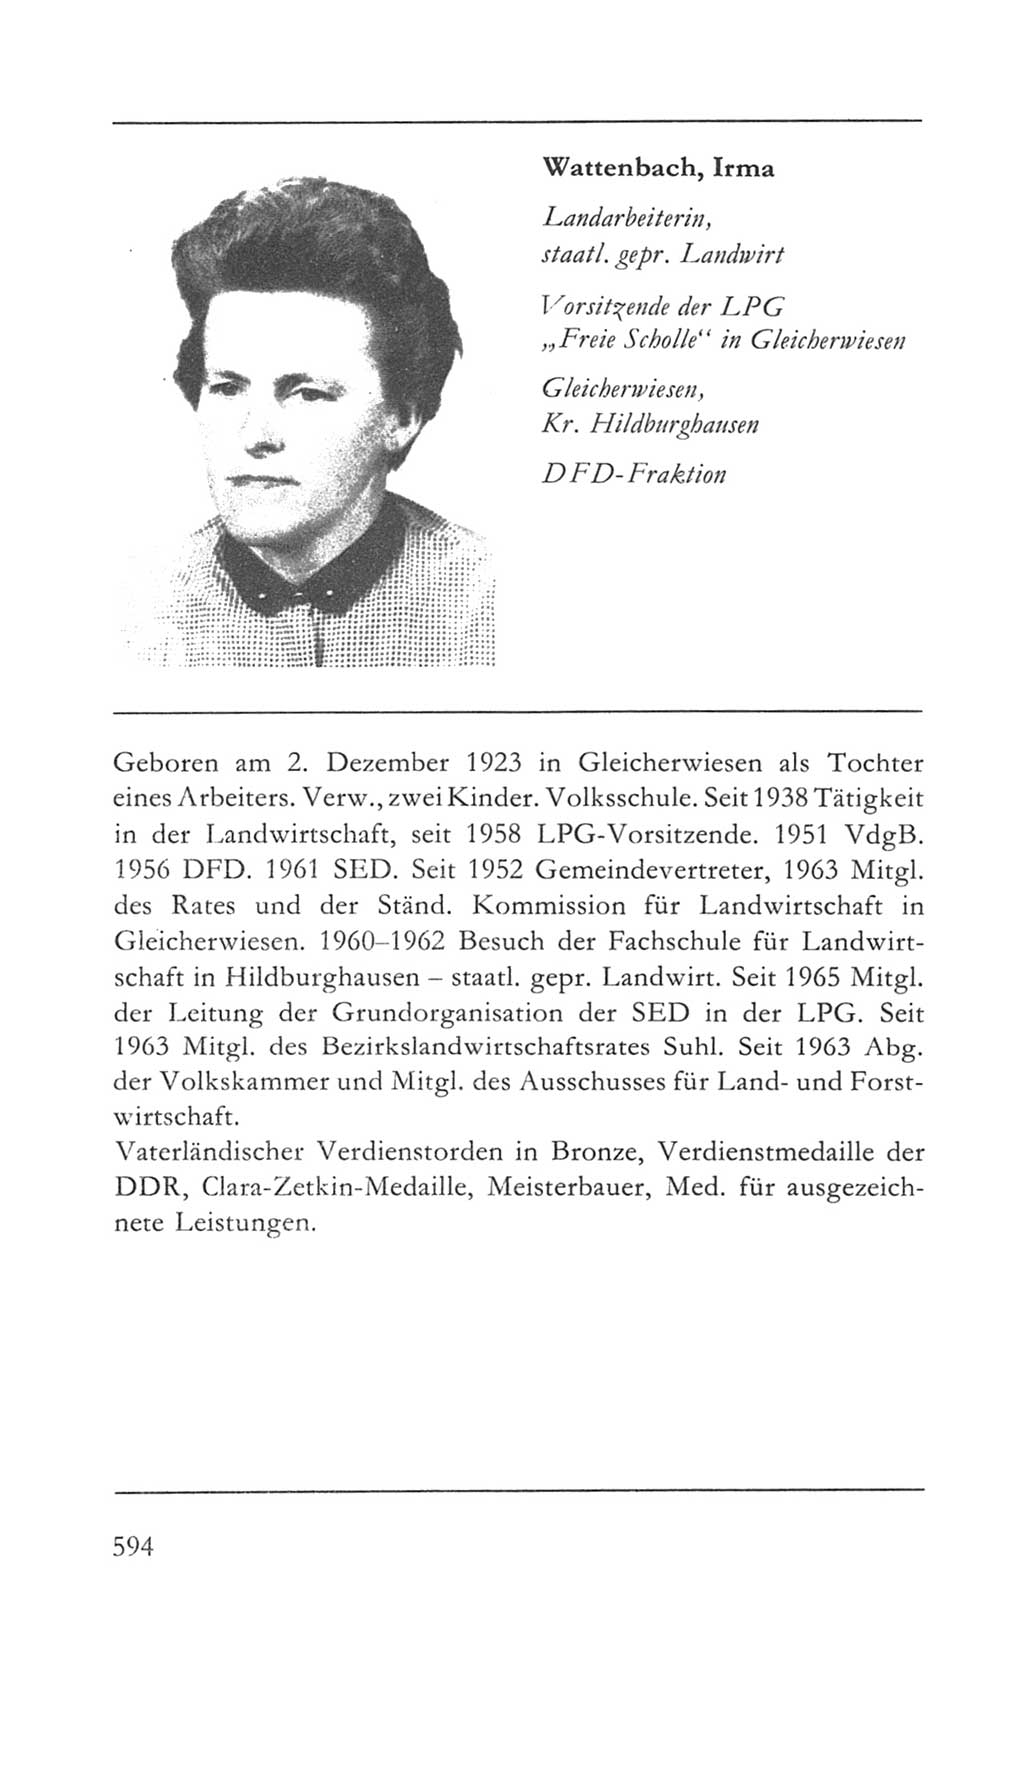 Volkskammer (VK) der Deutschen Demokratischen Republik (DDR) 5. Wahlperiode 1967-1971, Seite 594 (VK. DDR 5. WP. 1967-1971, S. 594)